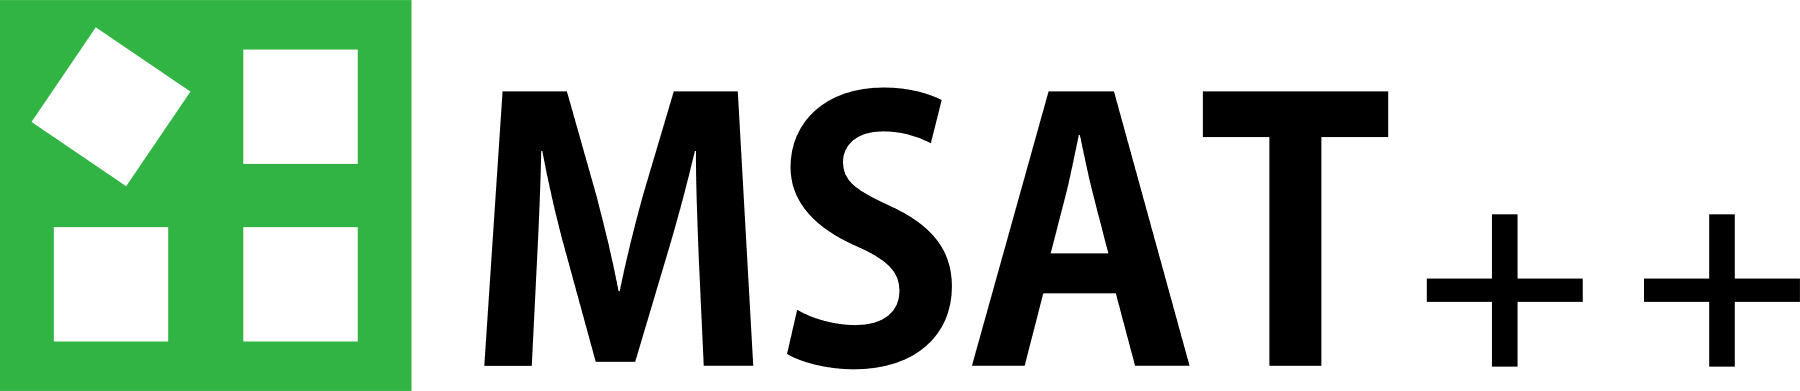 MSAT++ Logo